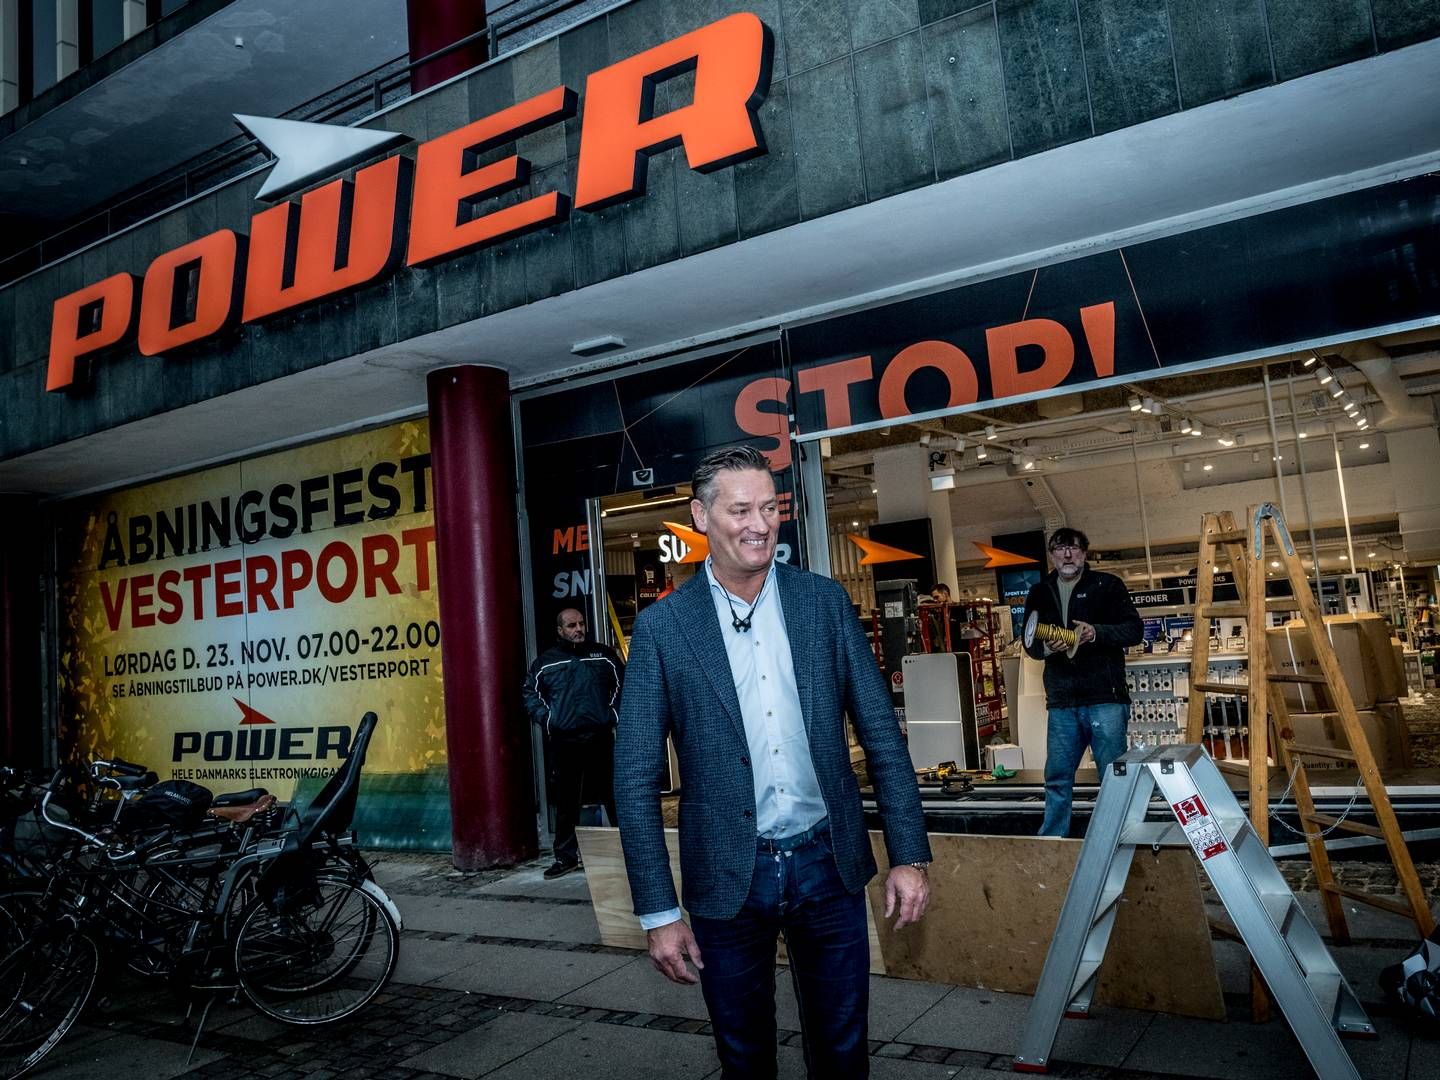 Power har siden 2014 haft adm. direktør Jesper Boysen i front for den danske forretning. | Foto: Linda Johansen